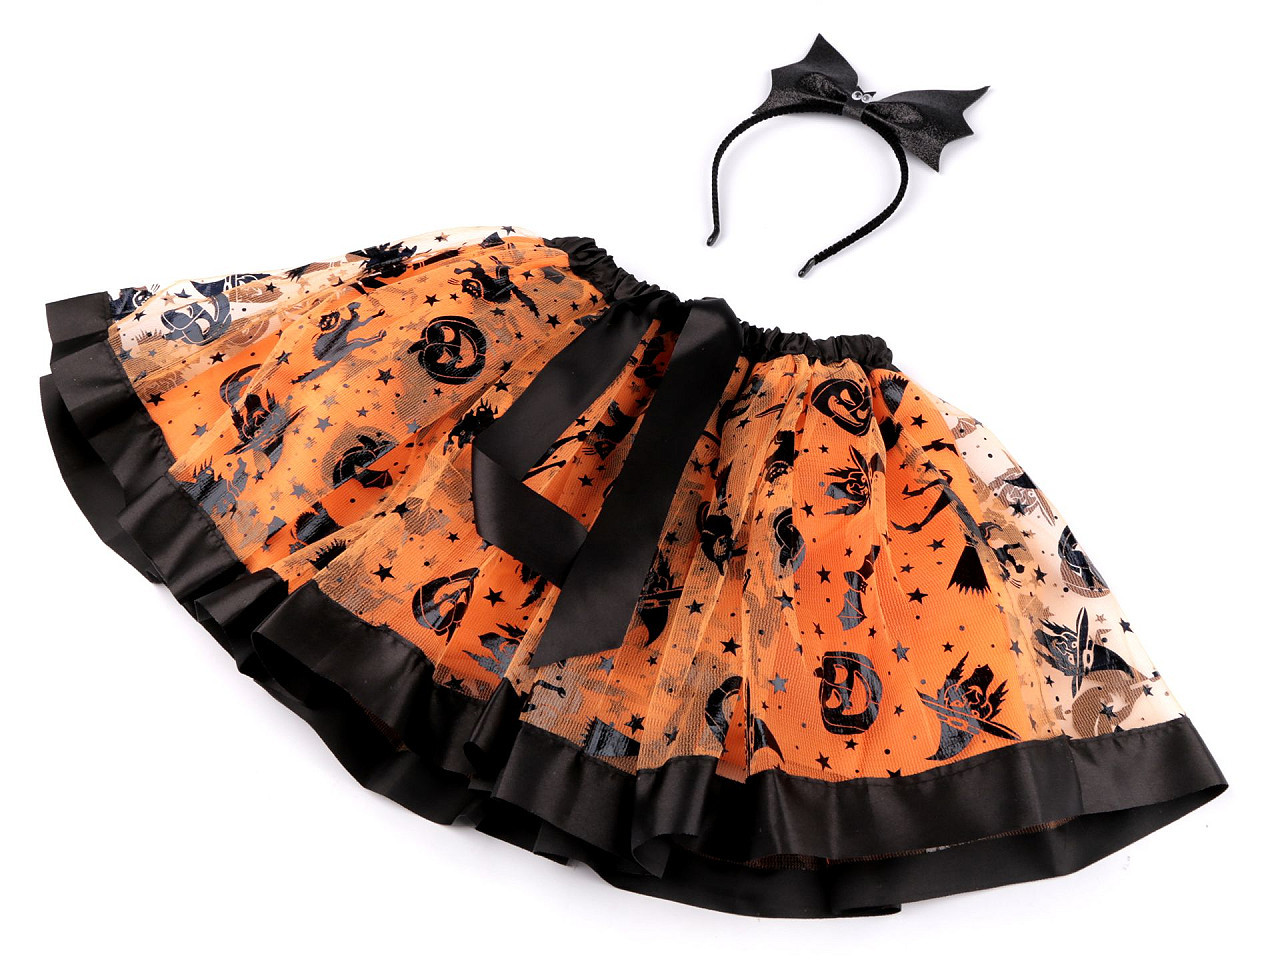 Karnevalový kostým - Halloween, čarodějnice, barva oranžová